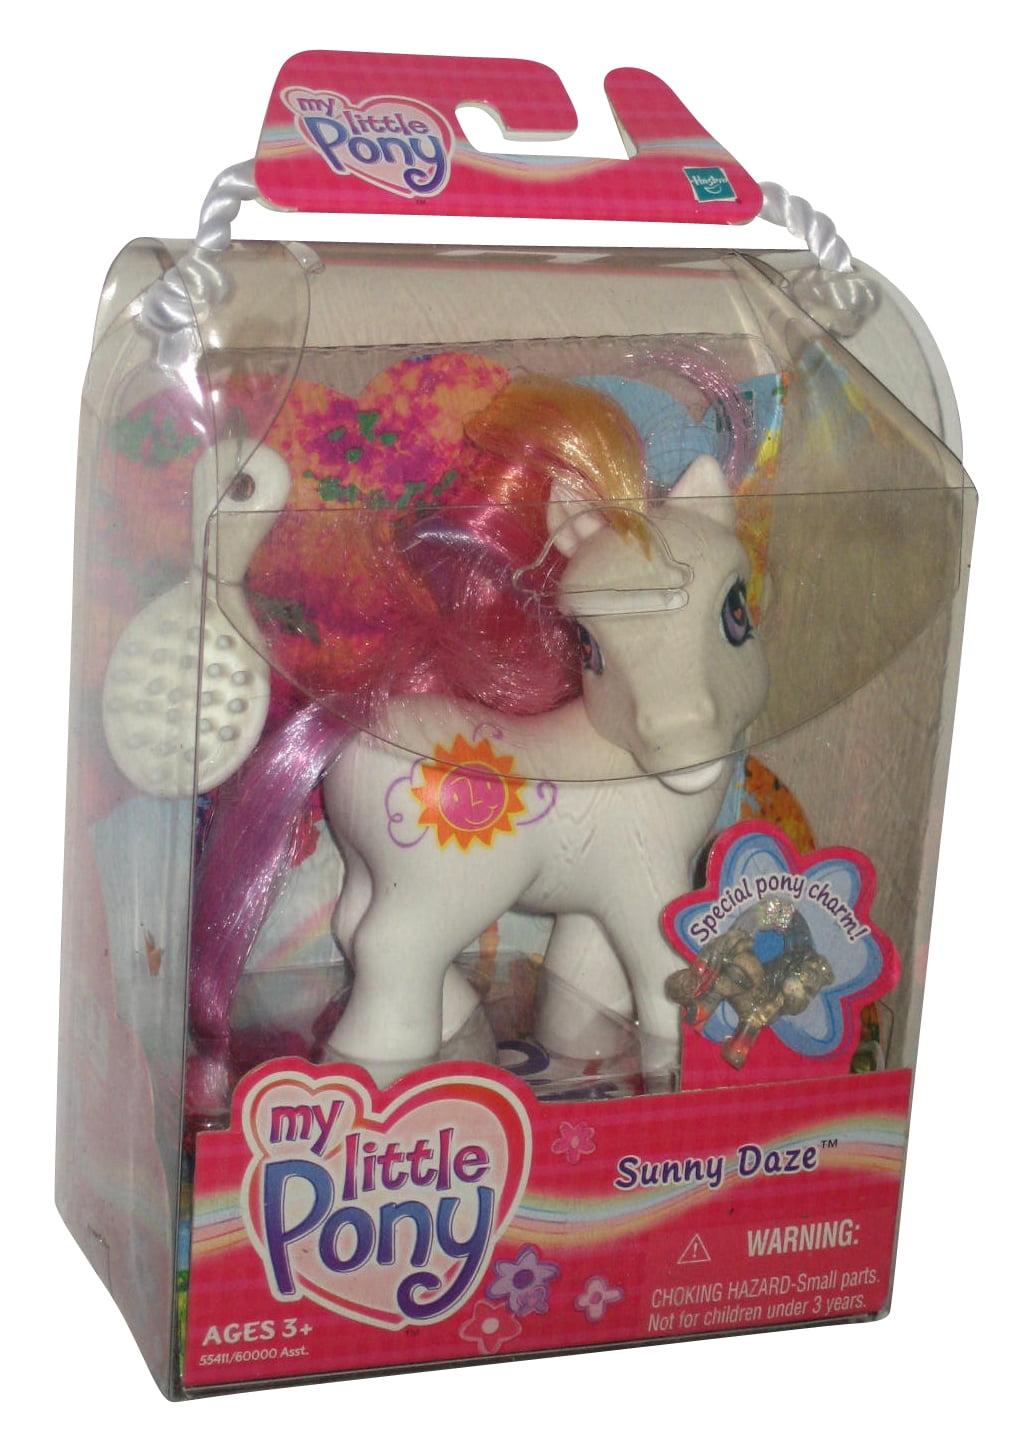 My Little Pony G3 Sunny Daze Toy Figure W Special Charm 55411